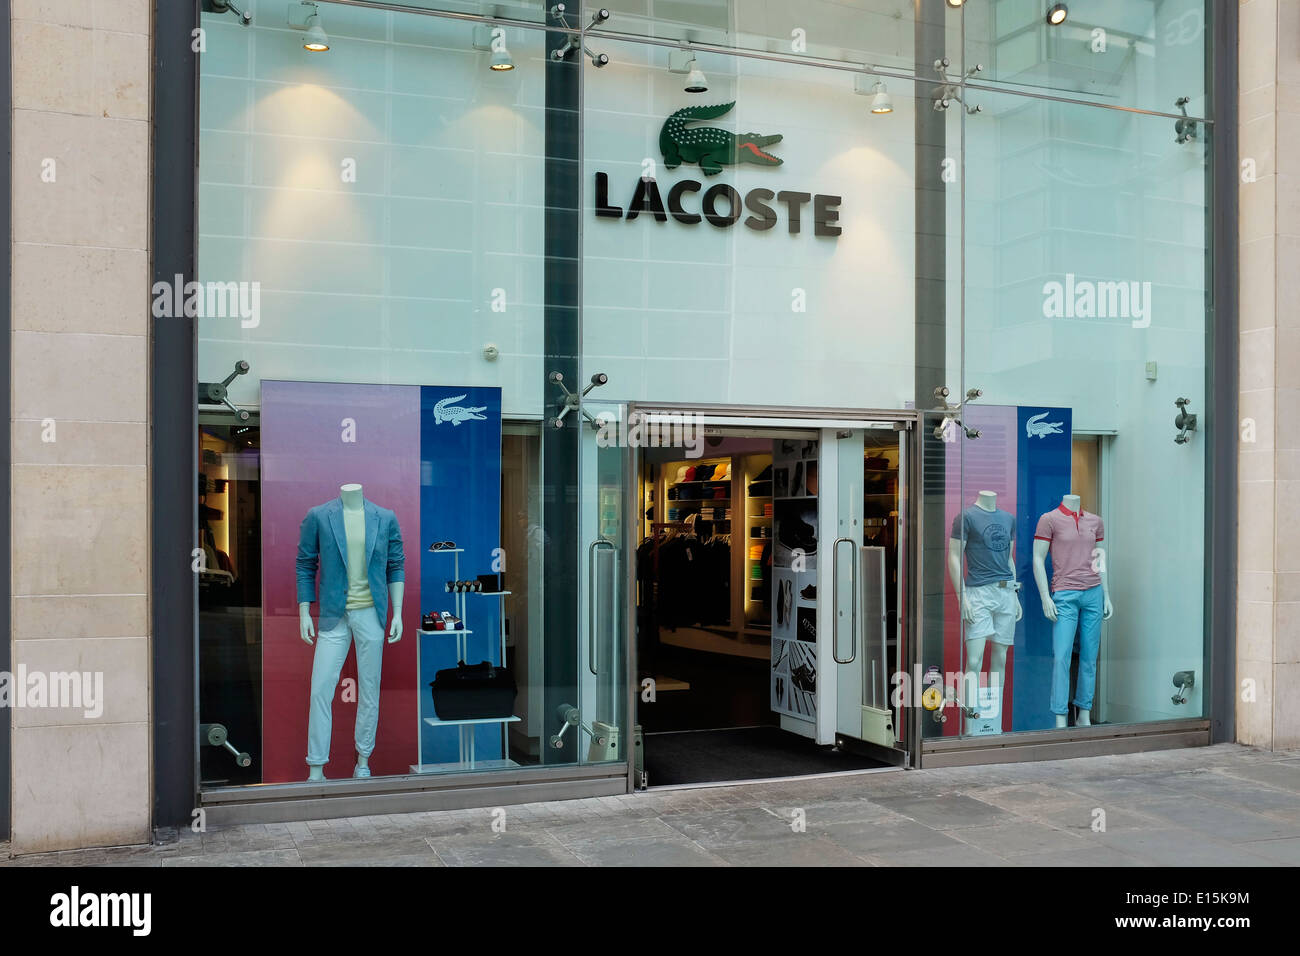 Lacoste shop store immagini e fotografie stock ad alta risoluzione - Alamy